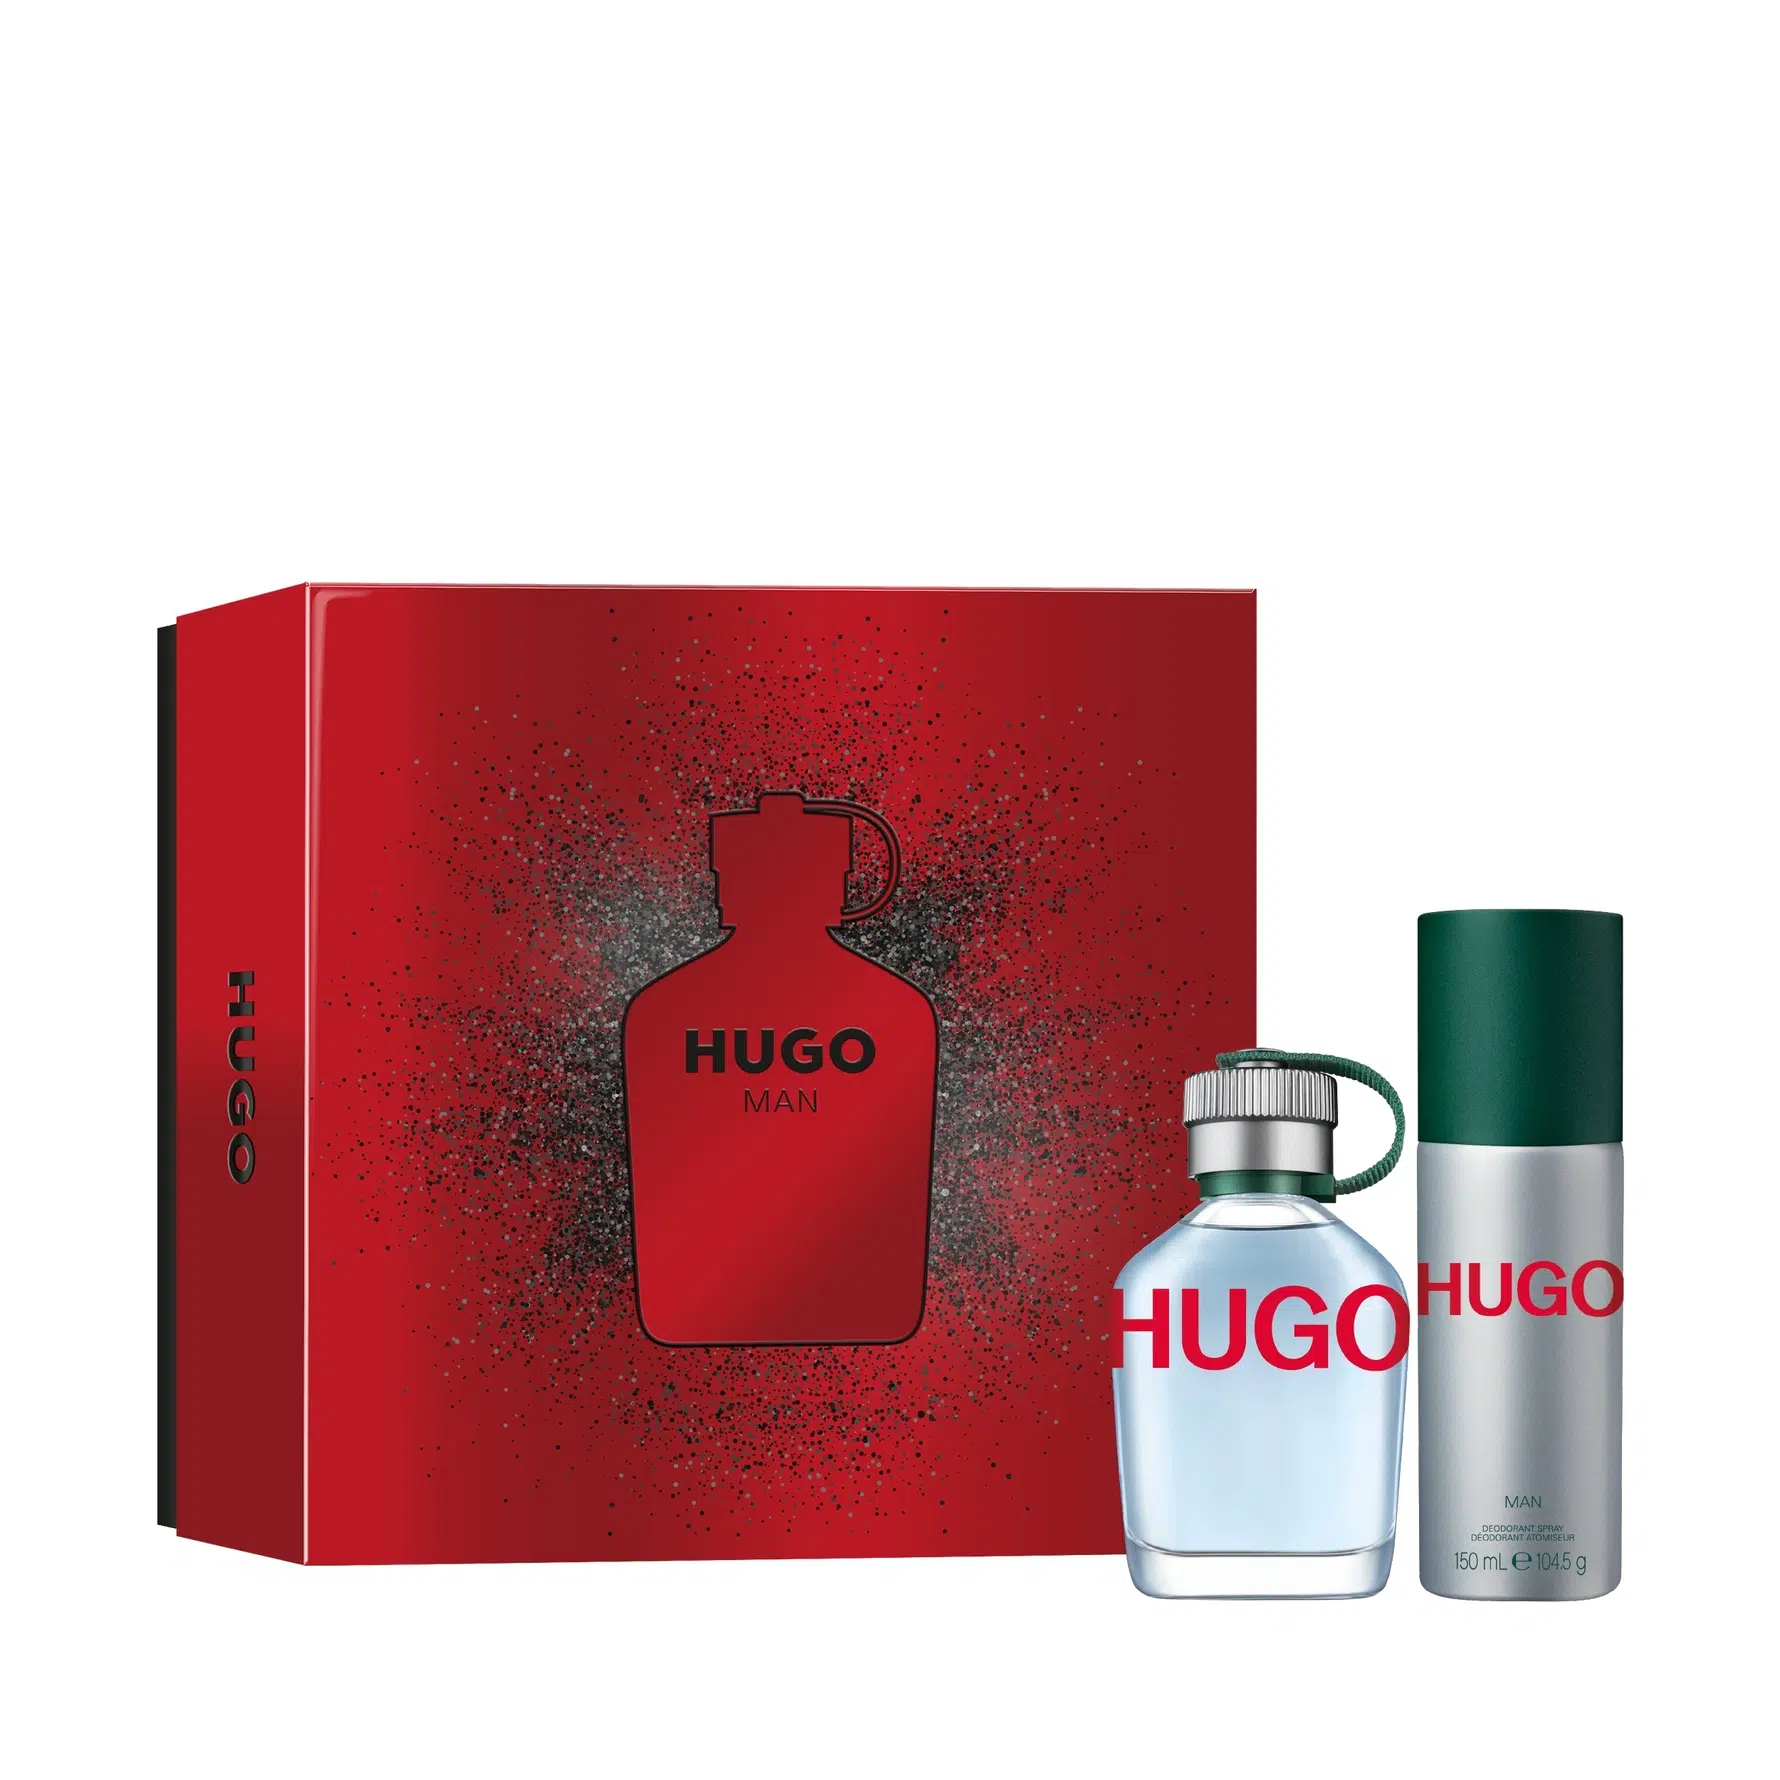 Hugo Man Gift Set